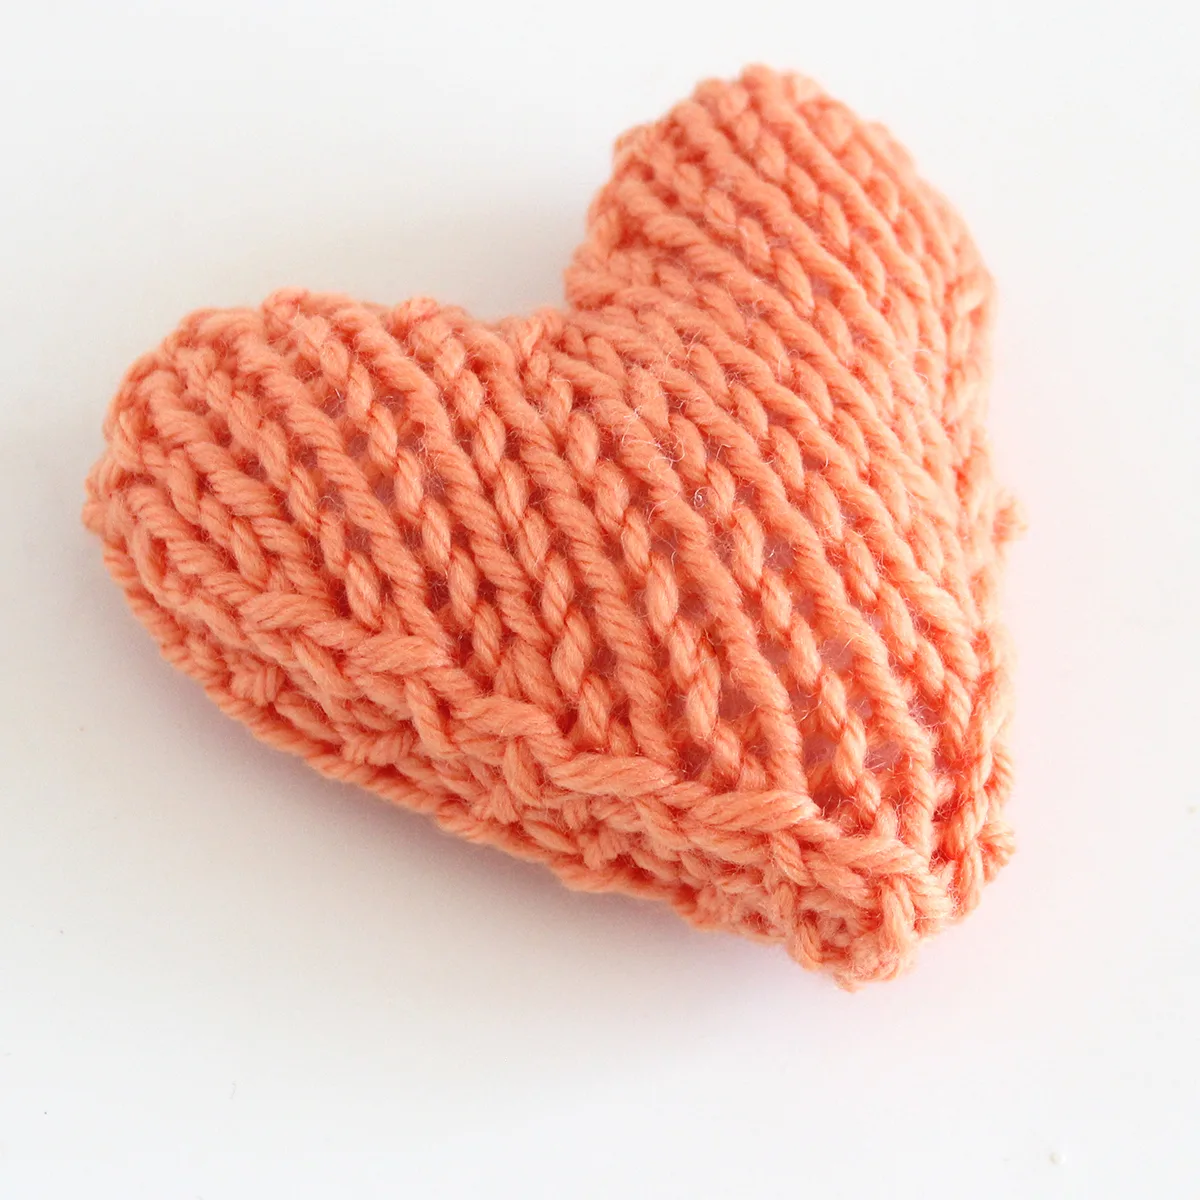 Heart Softie knitted in orange yarn.